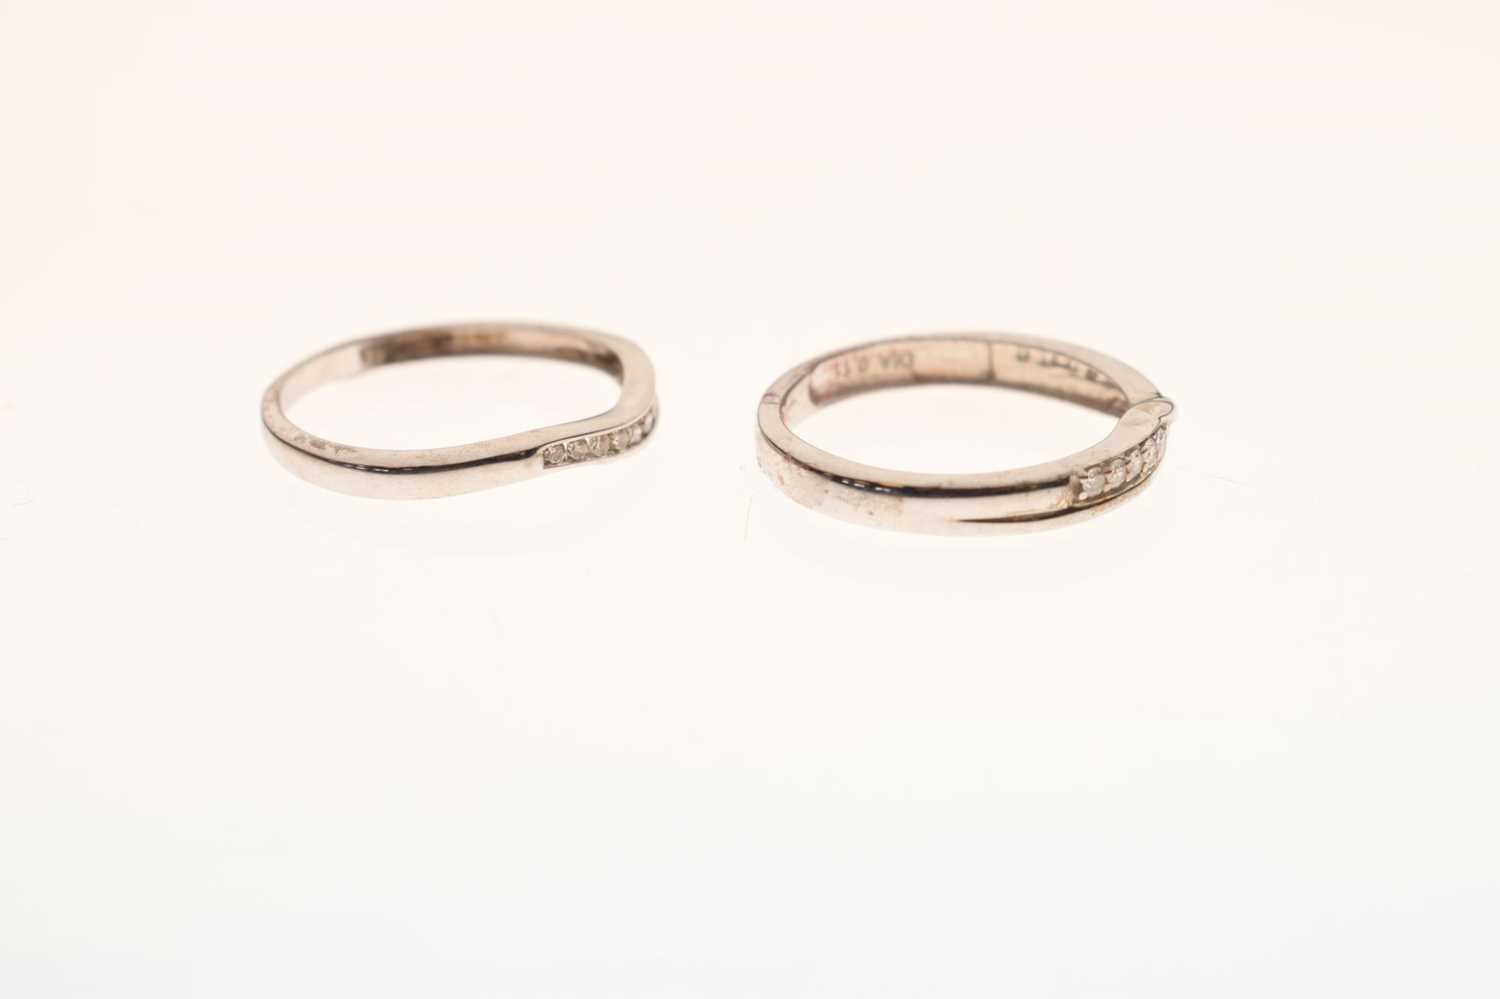 9ct white gold diamond set shaped wedding ring - Image 4 of 6